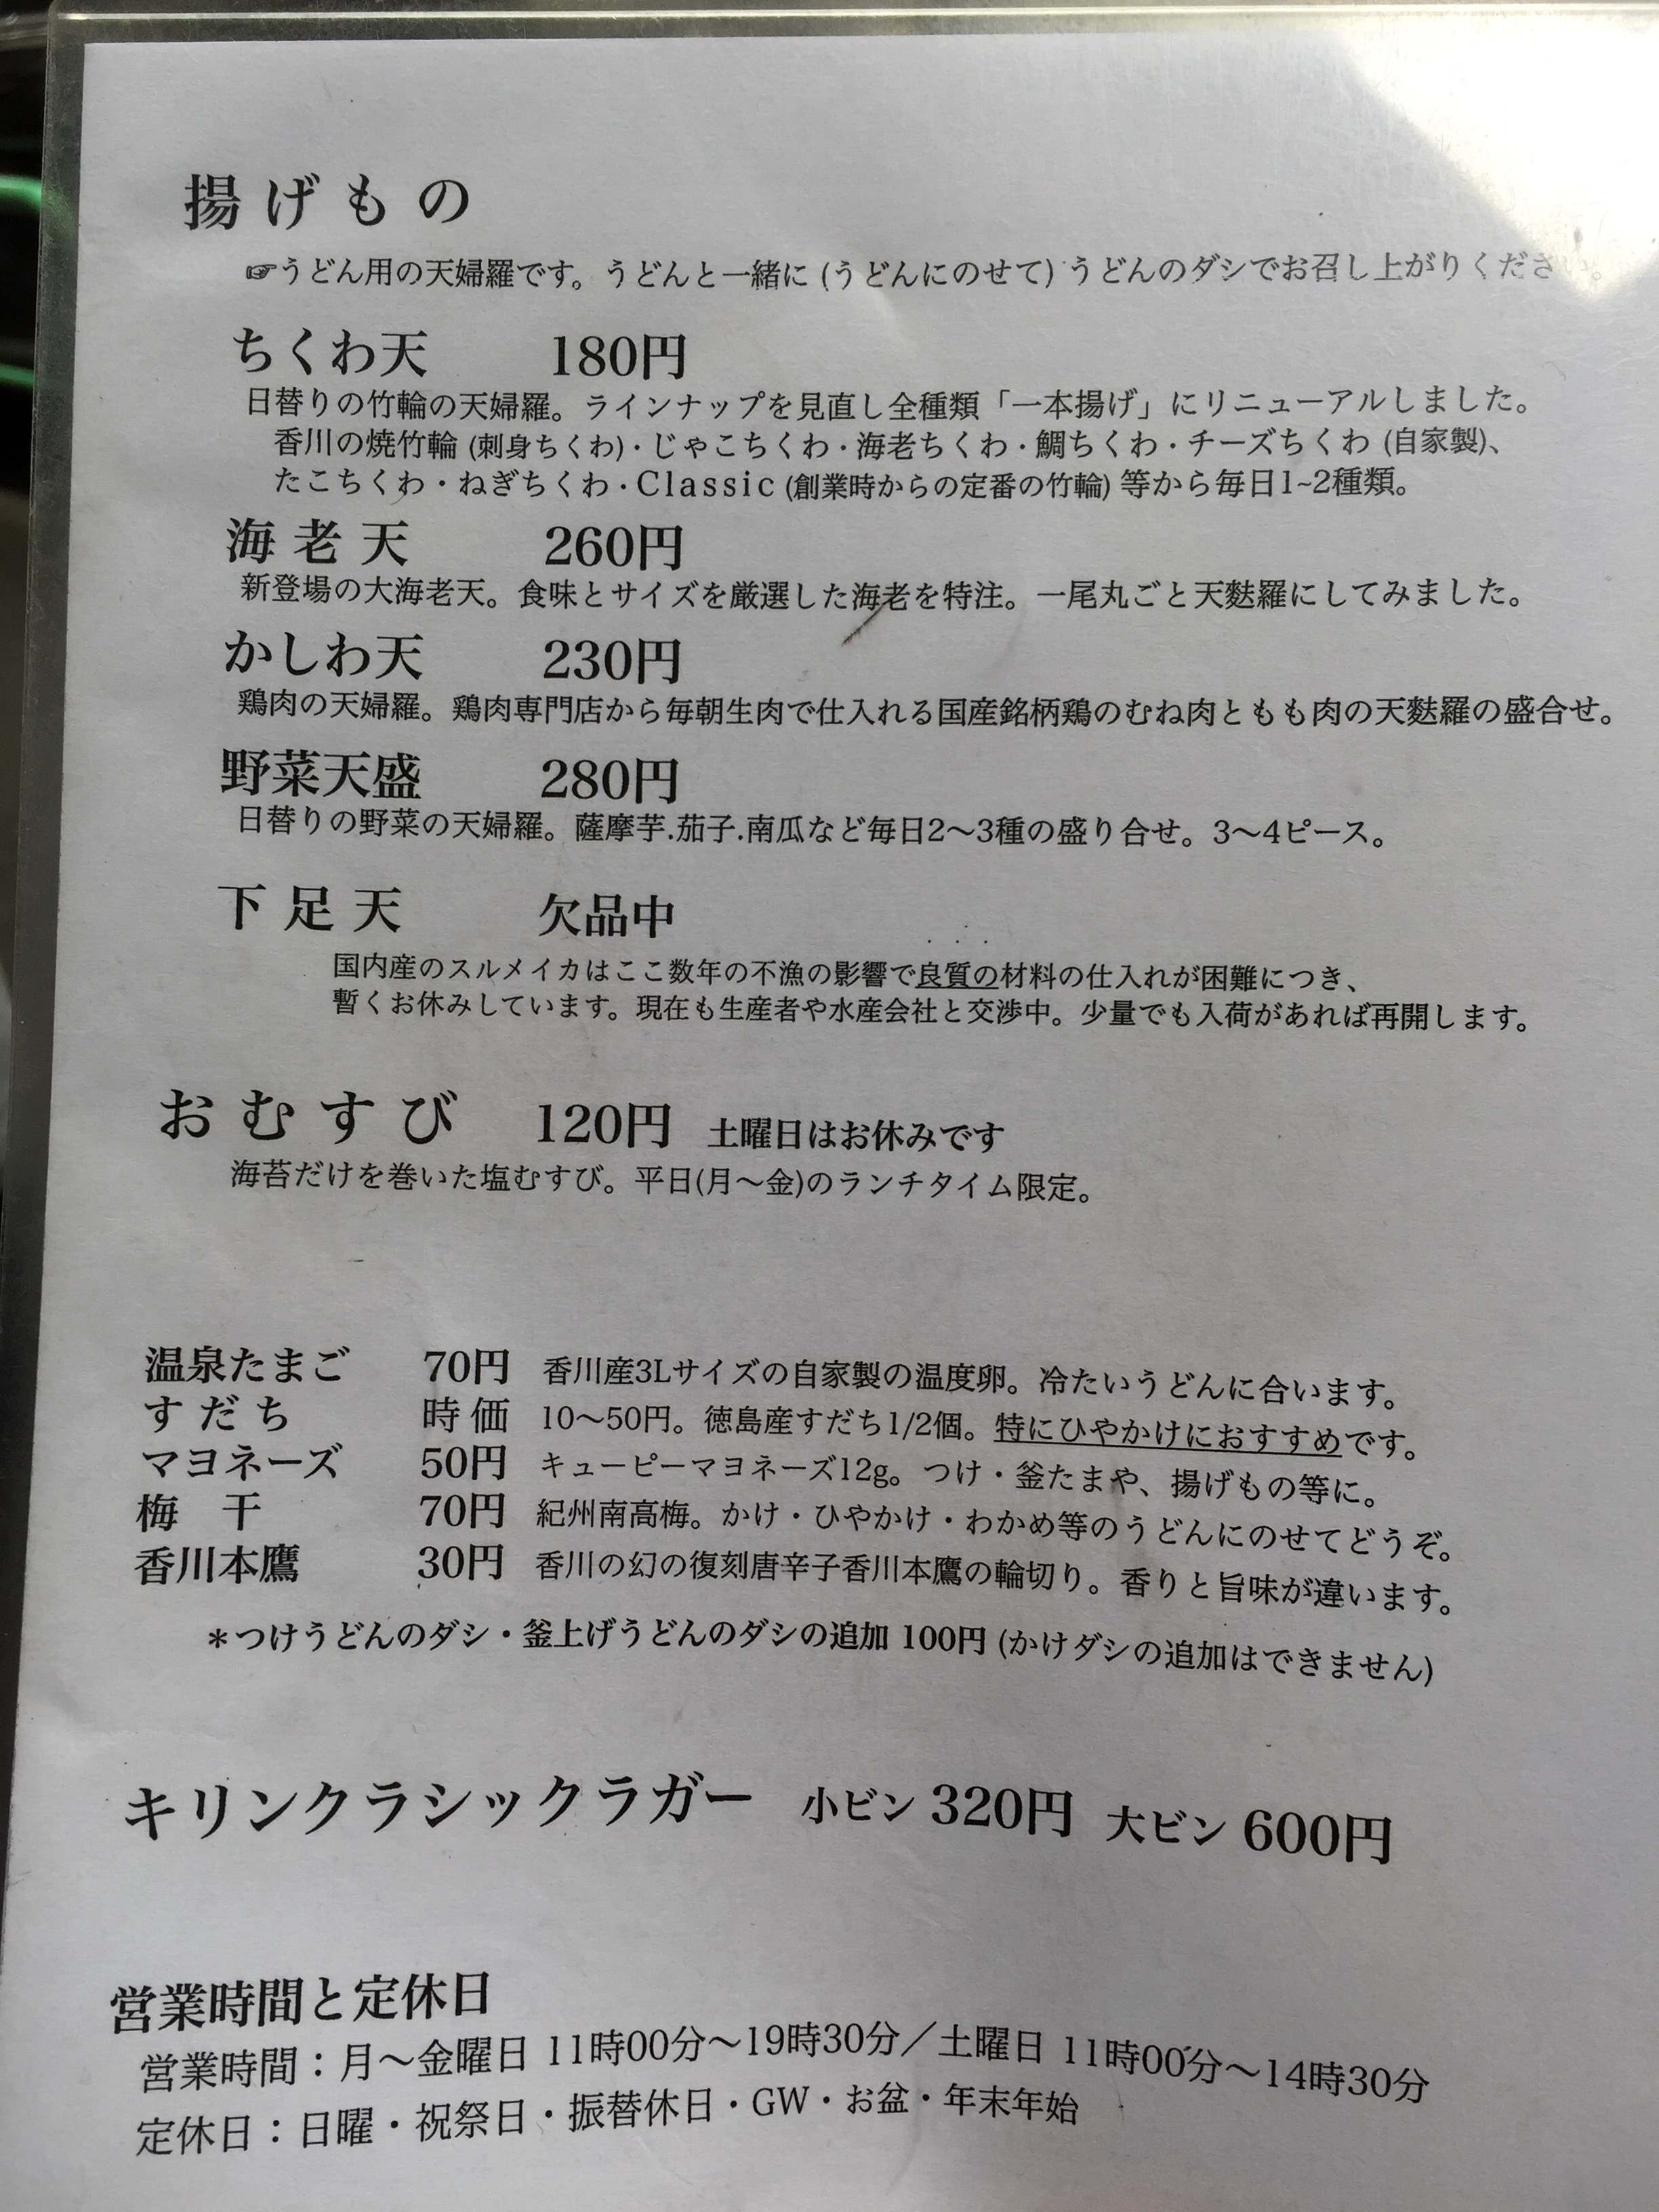 東京で一番おいしいと噂される讃岐うどん！行列必須の超人気店「うどん丸香」